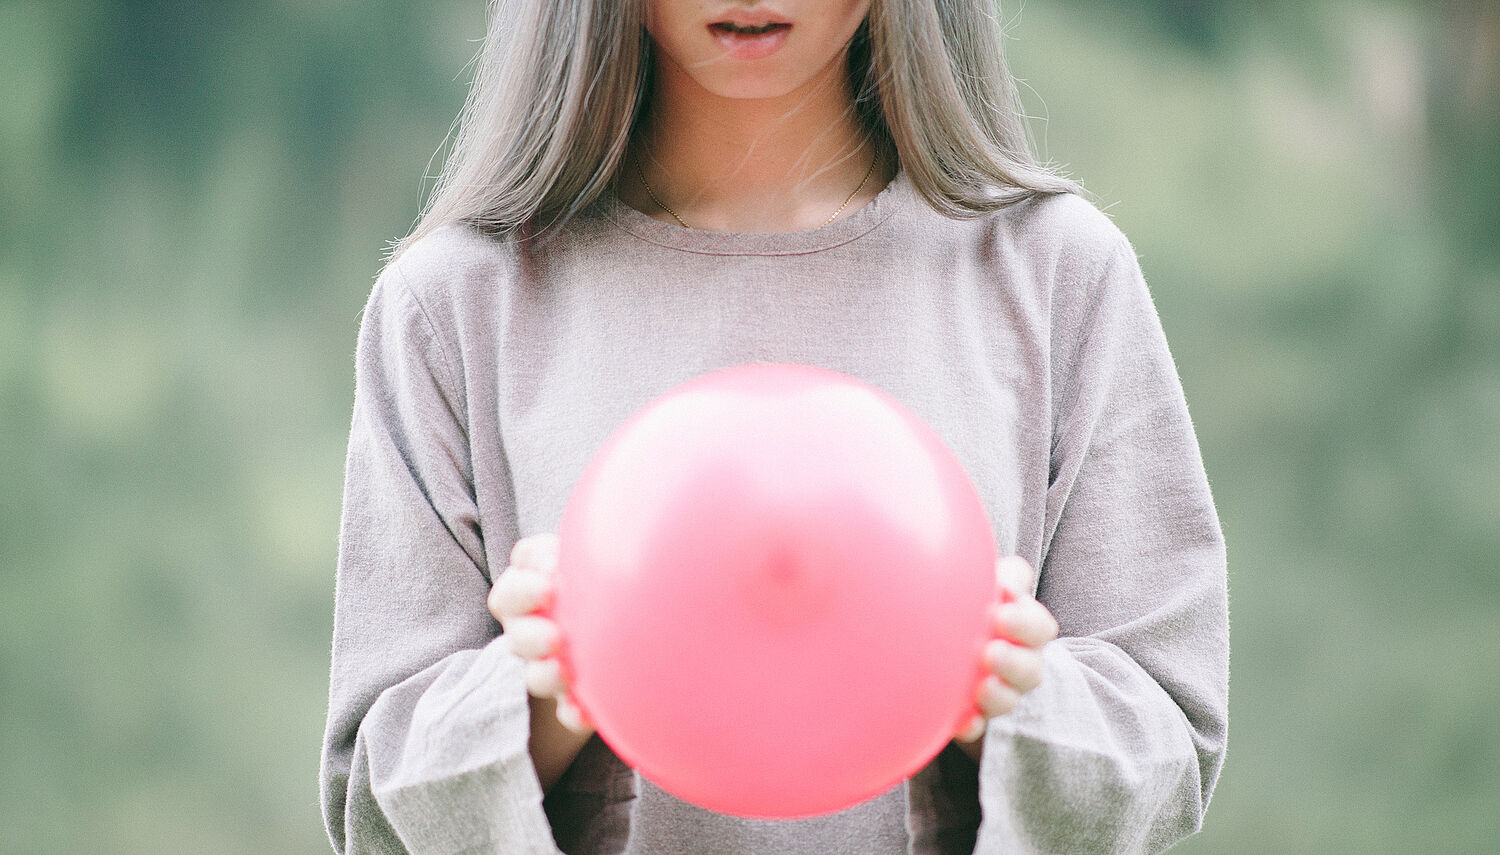 Junge Frau mit einem pinken Luftballon